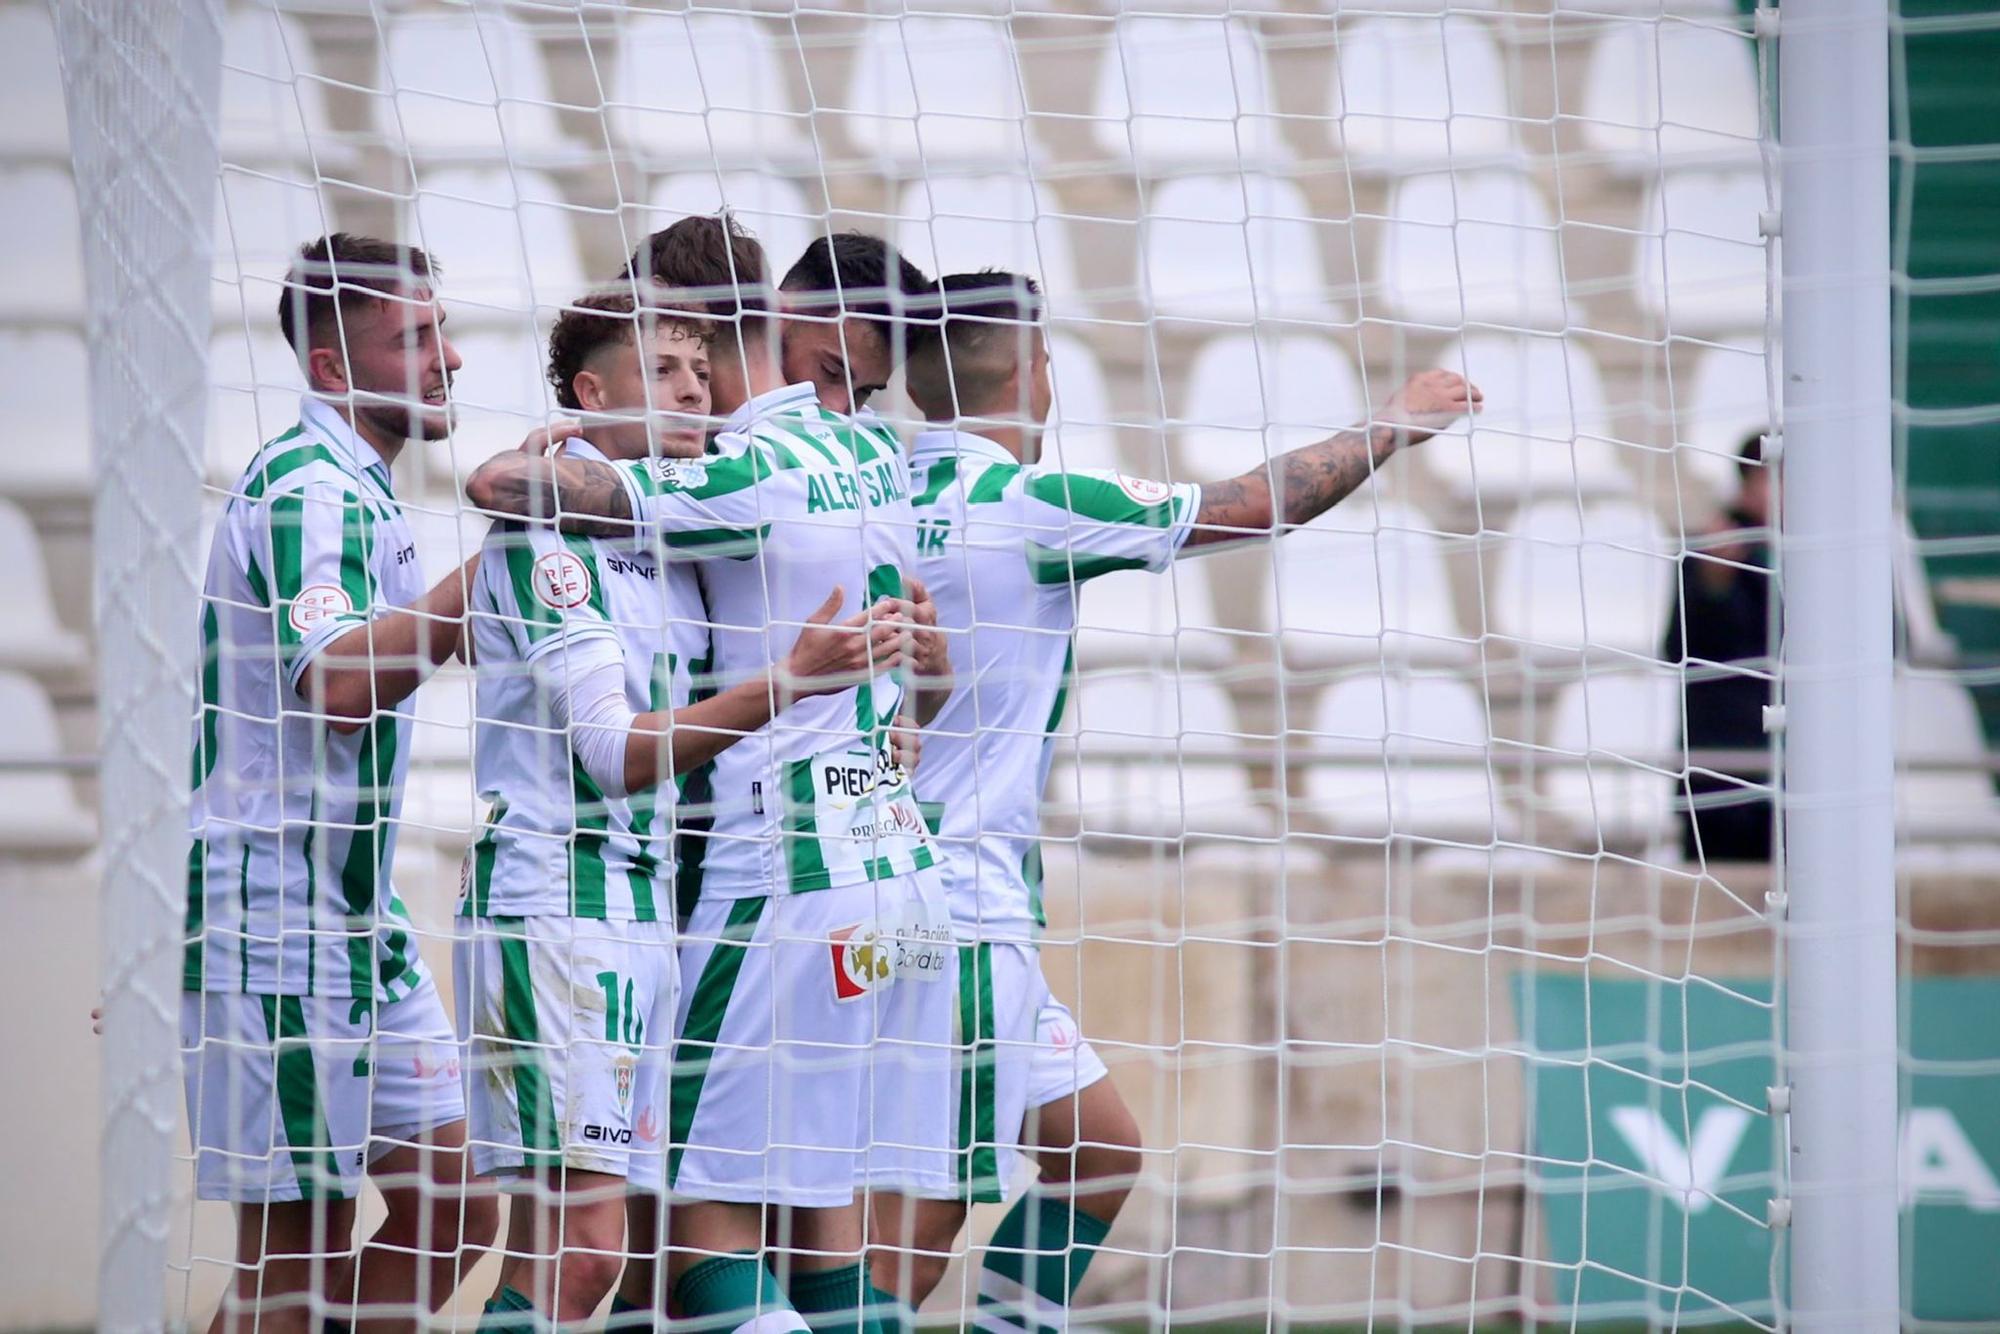 Córdoba CF-Melilla: el partido de El Arcángel en imágenes